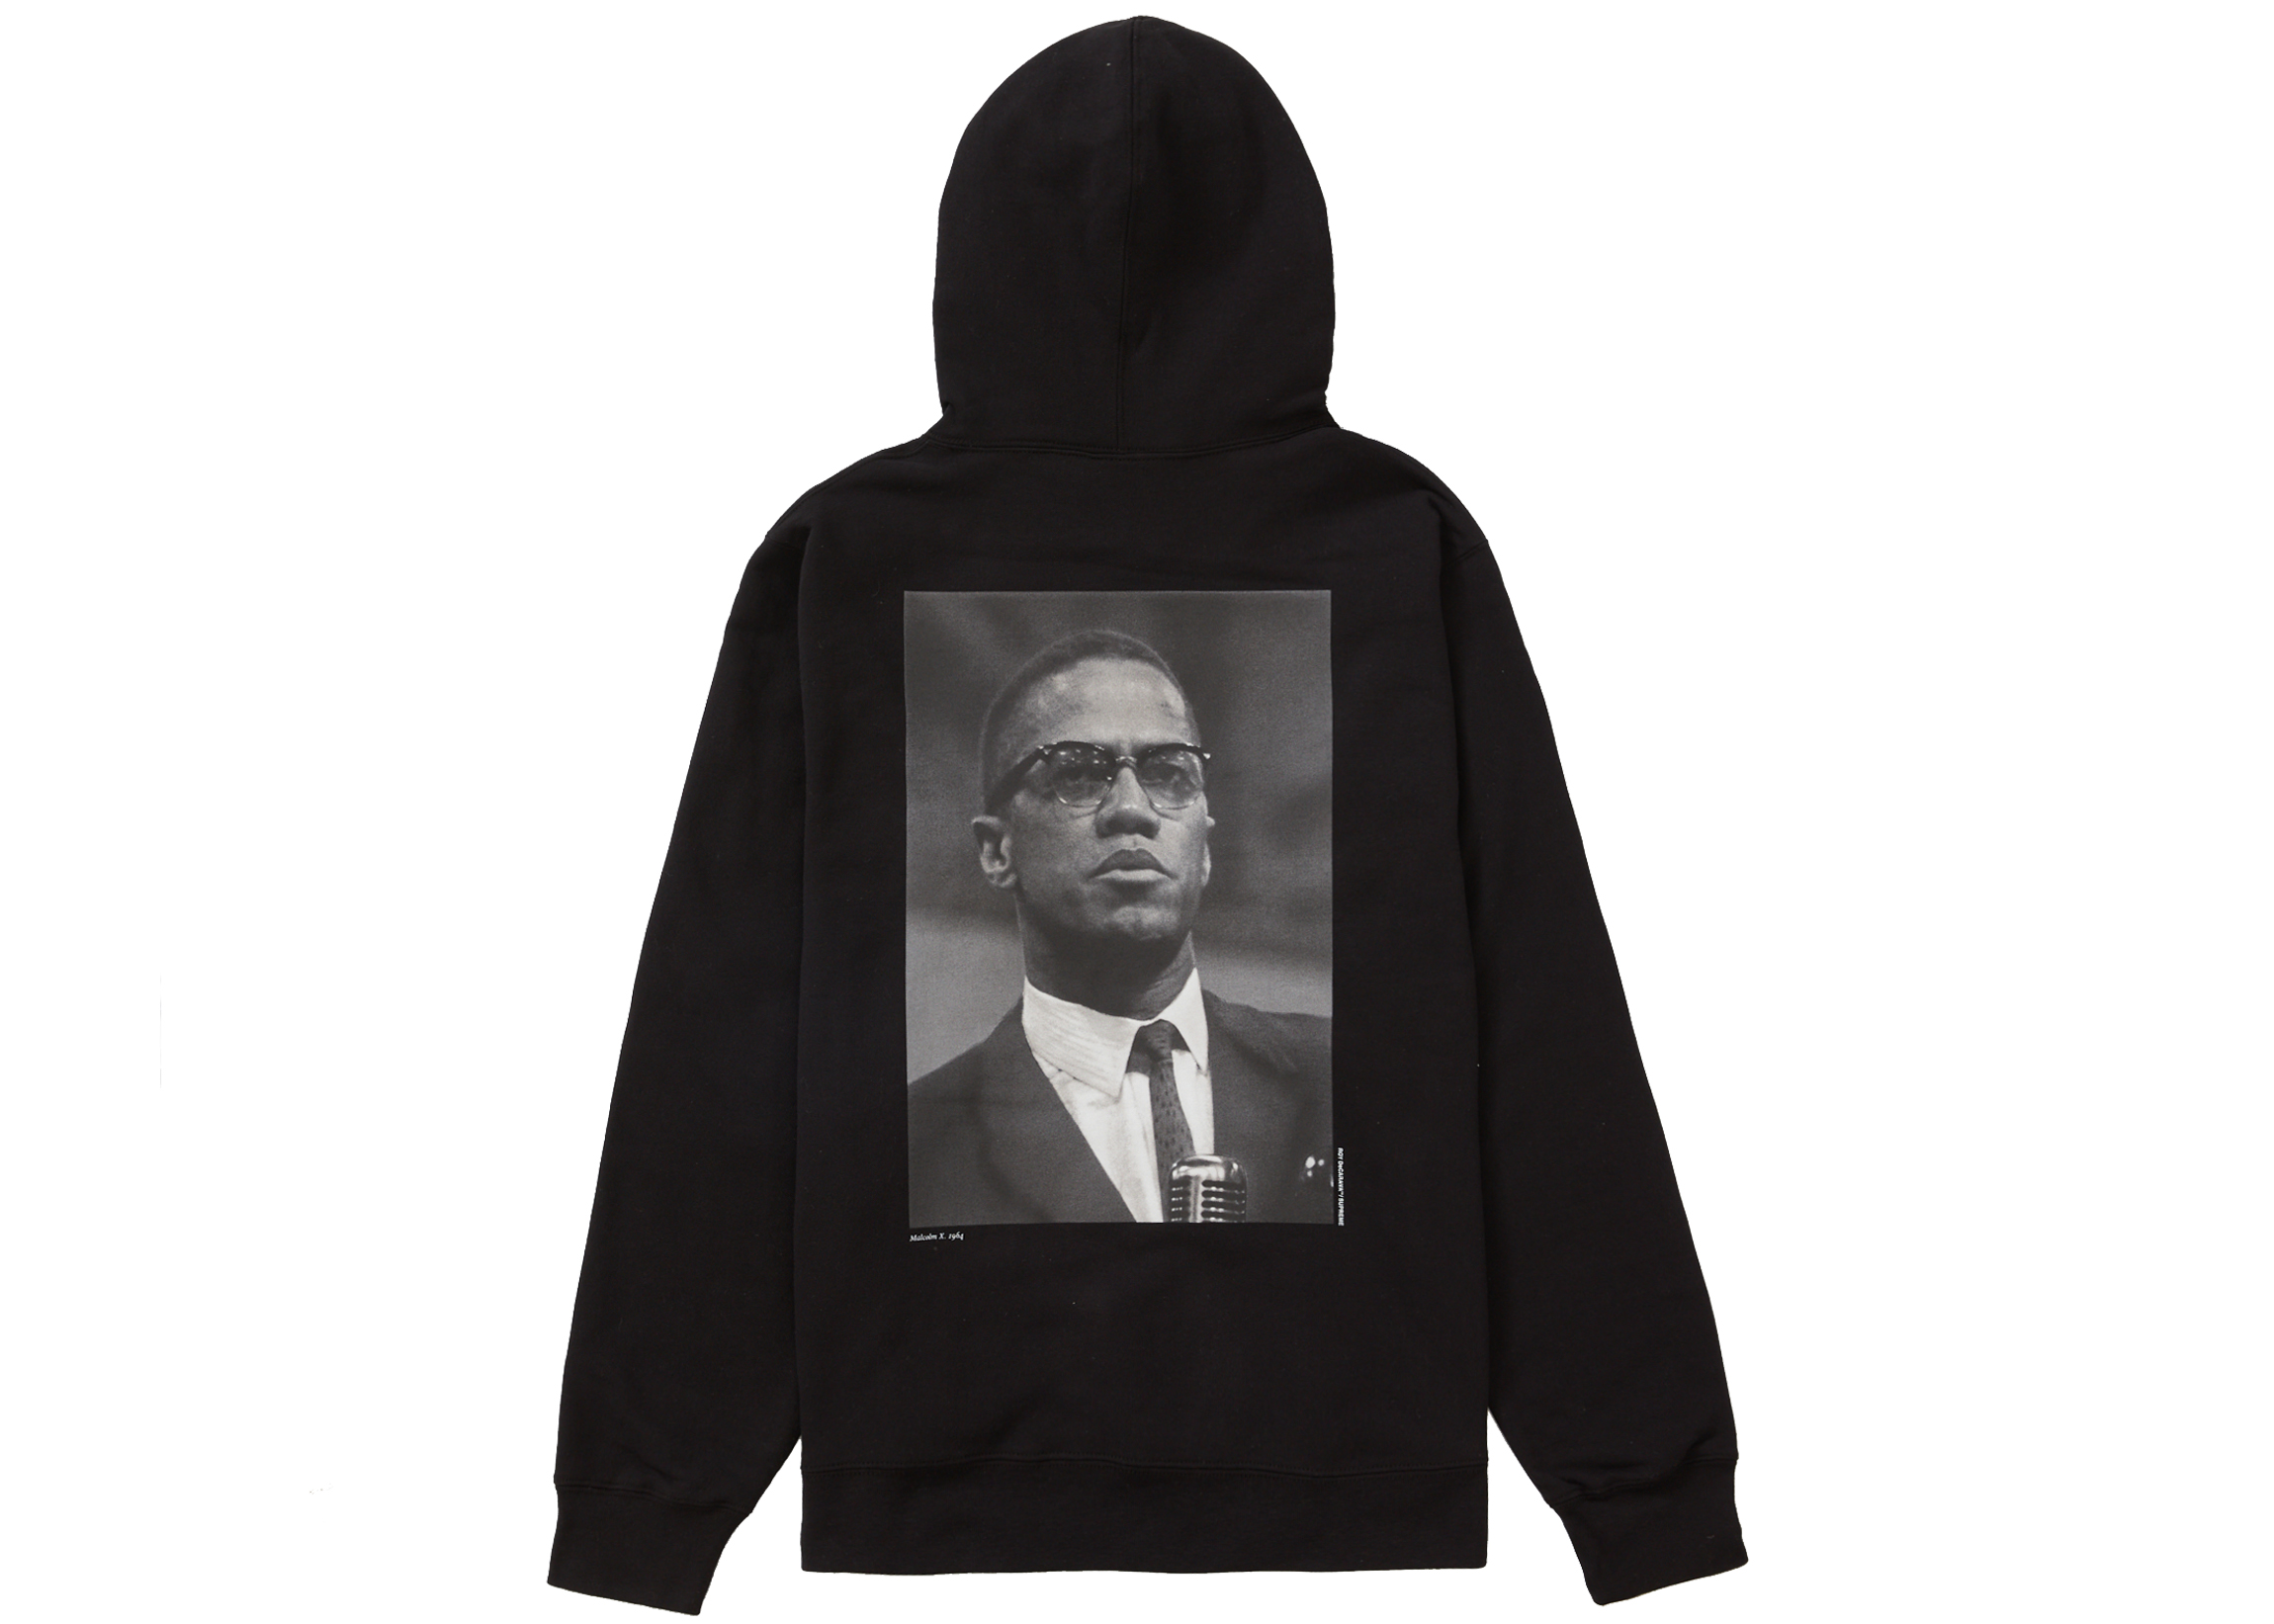 Supreme Malcolm X Hooded Sweatshirt